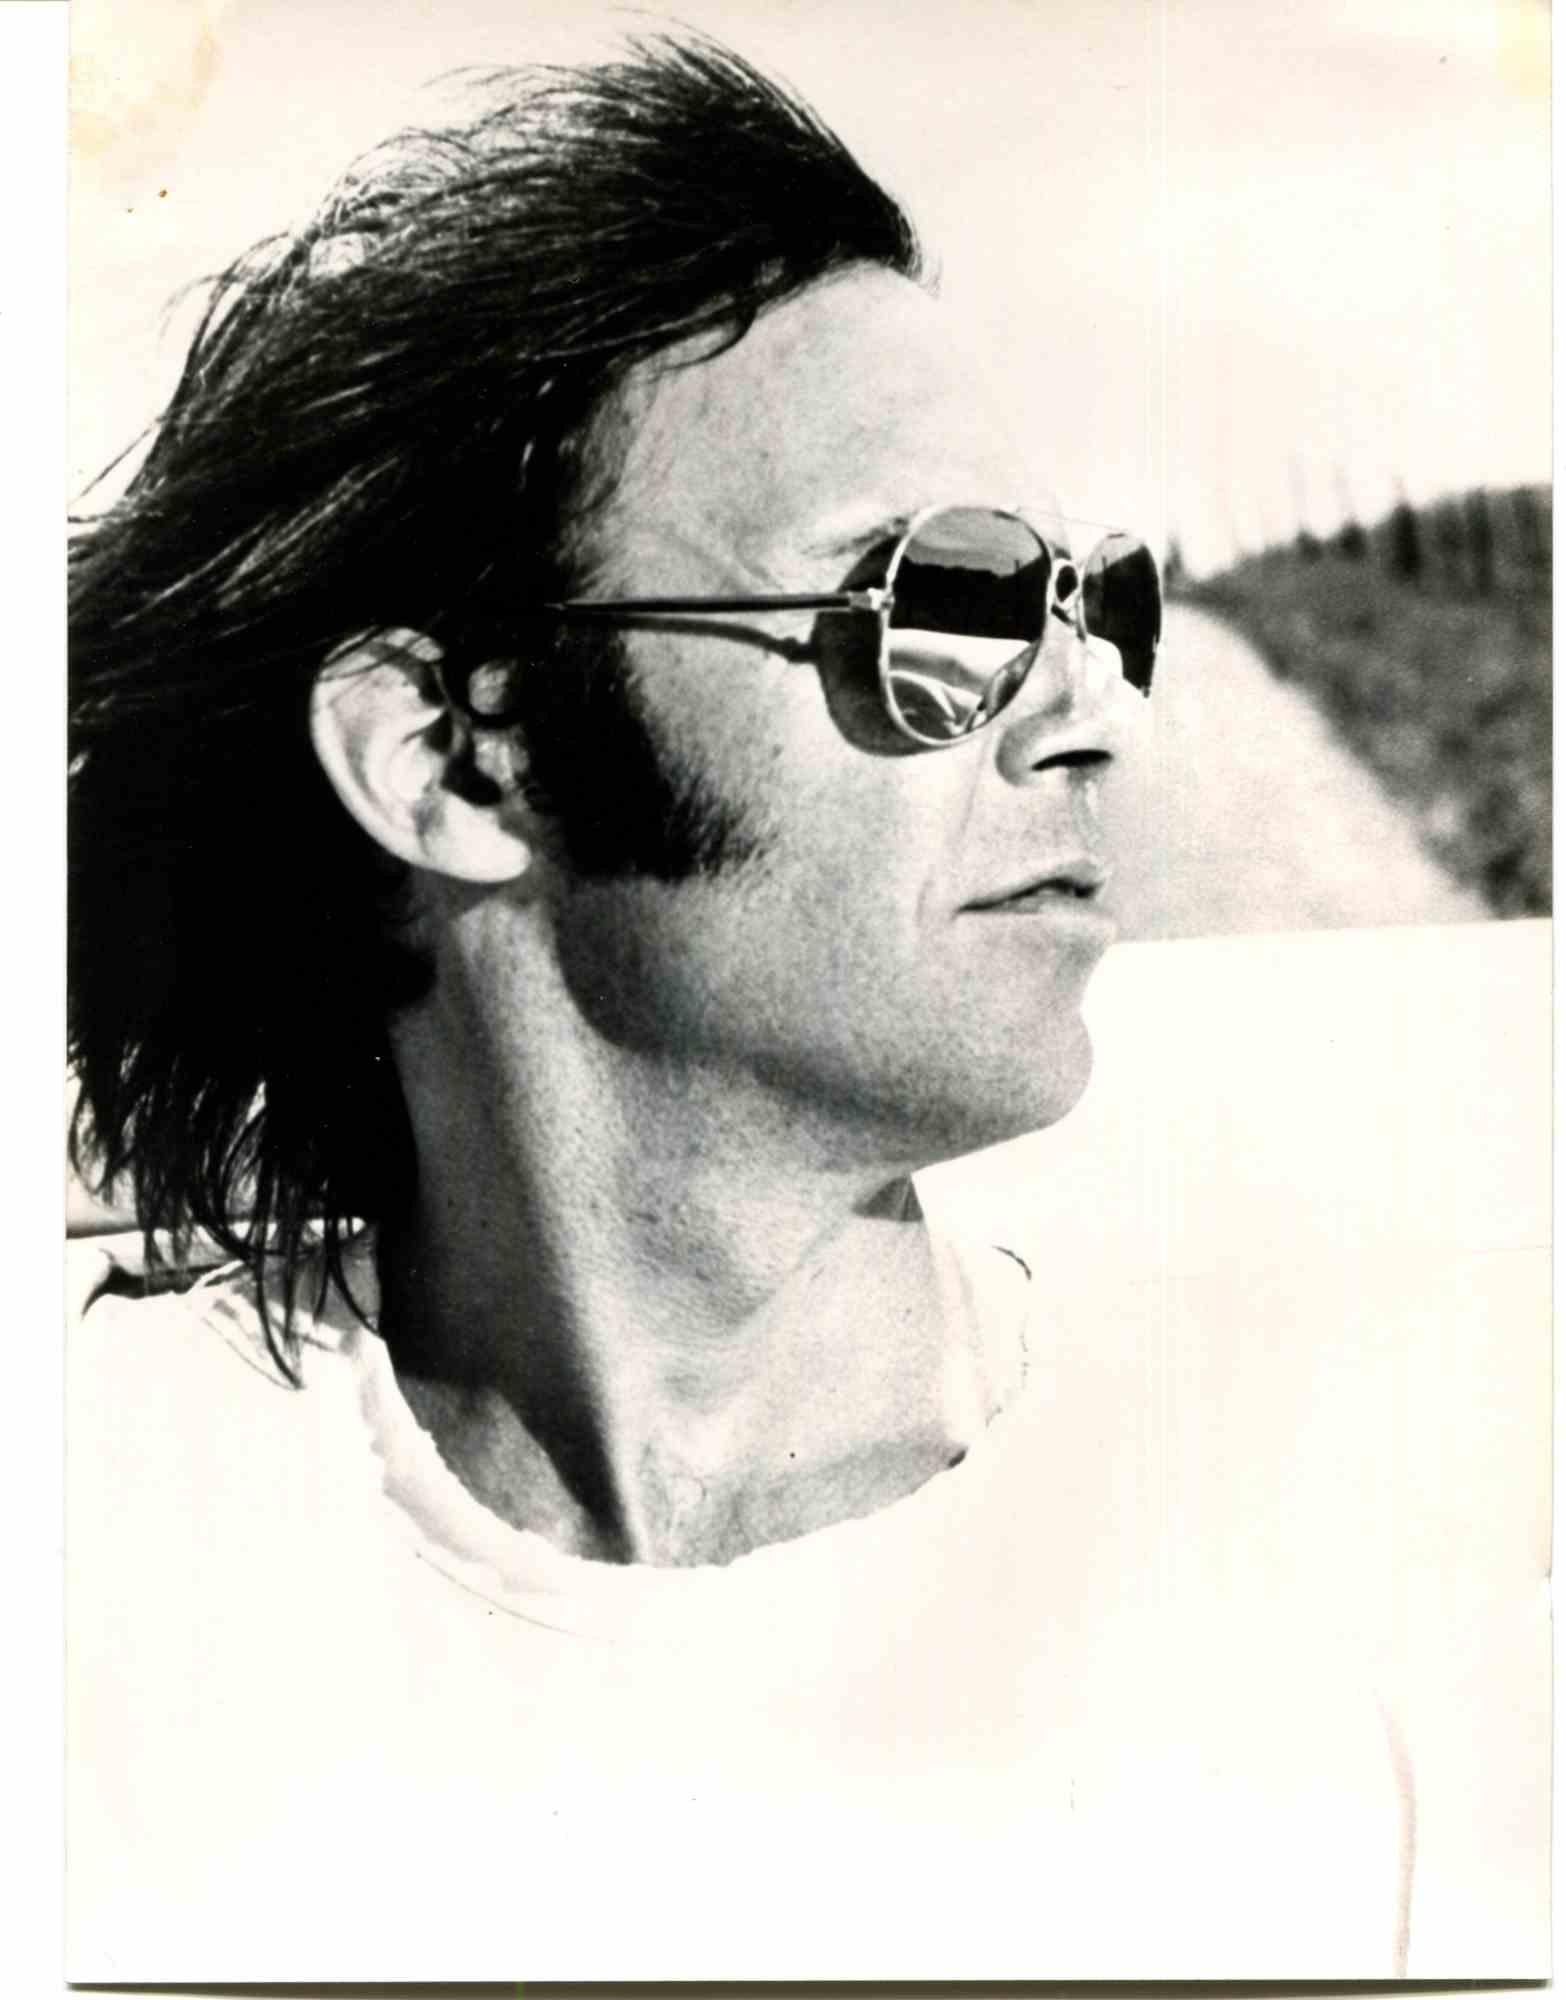 Unknown Portrait Photograph – Porträt von Neil Young – 1970er Jahre